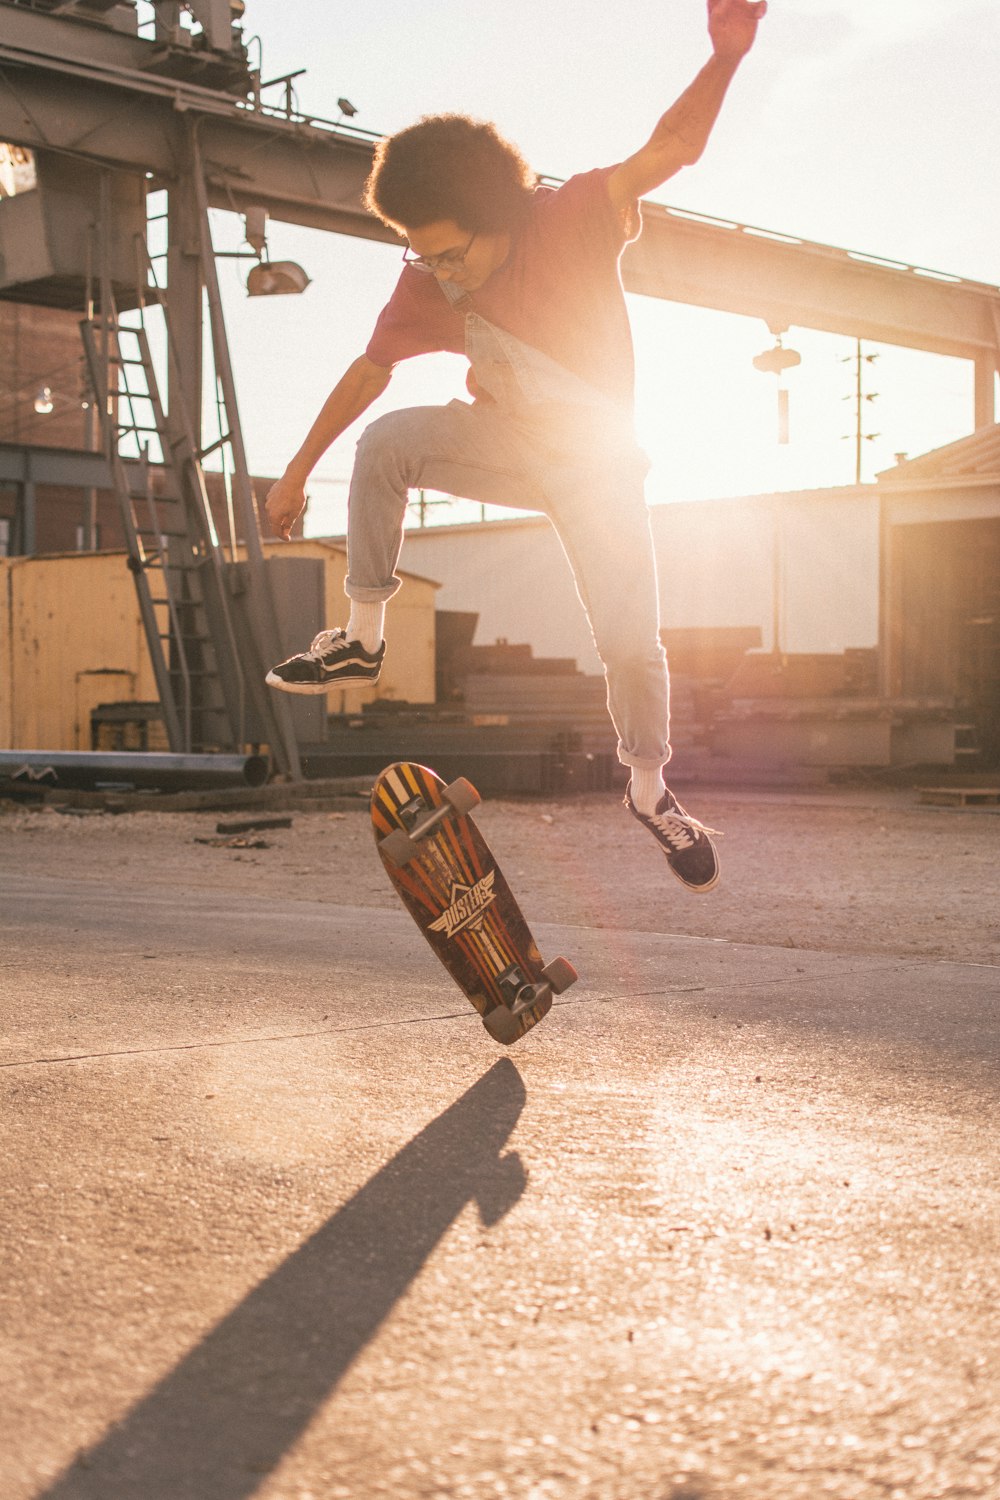 man skate boarding during daytime